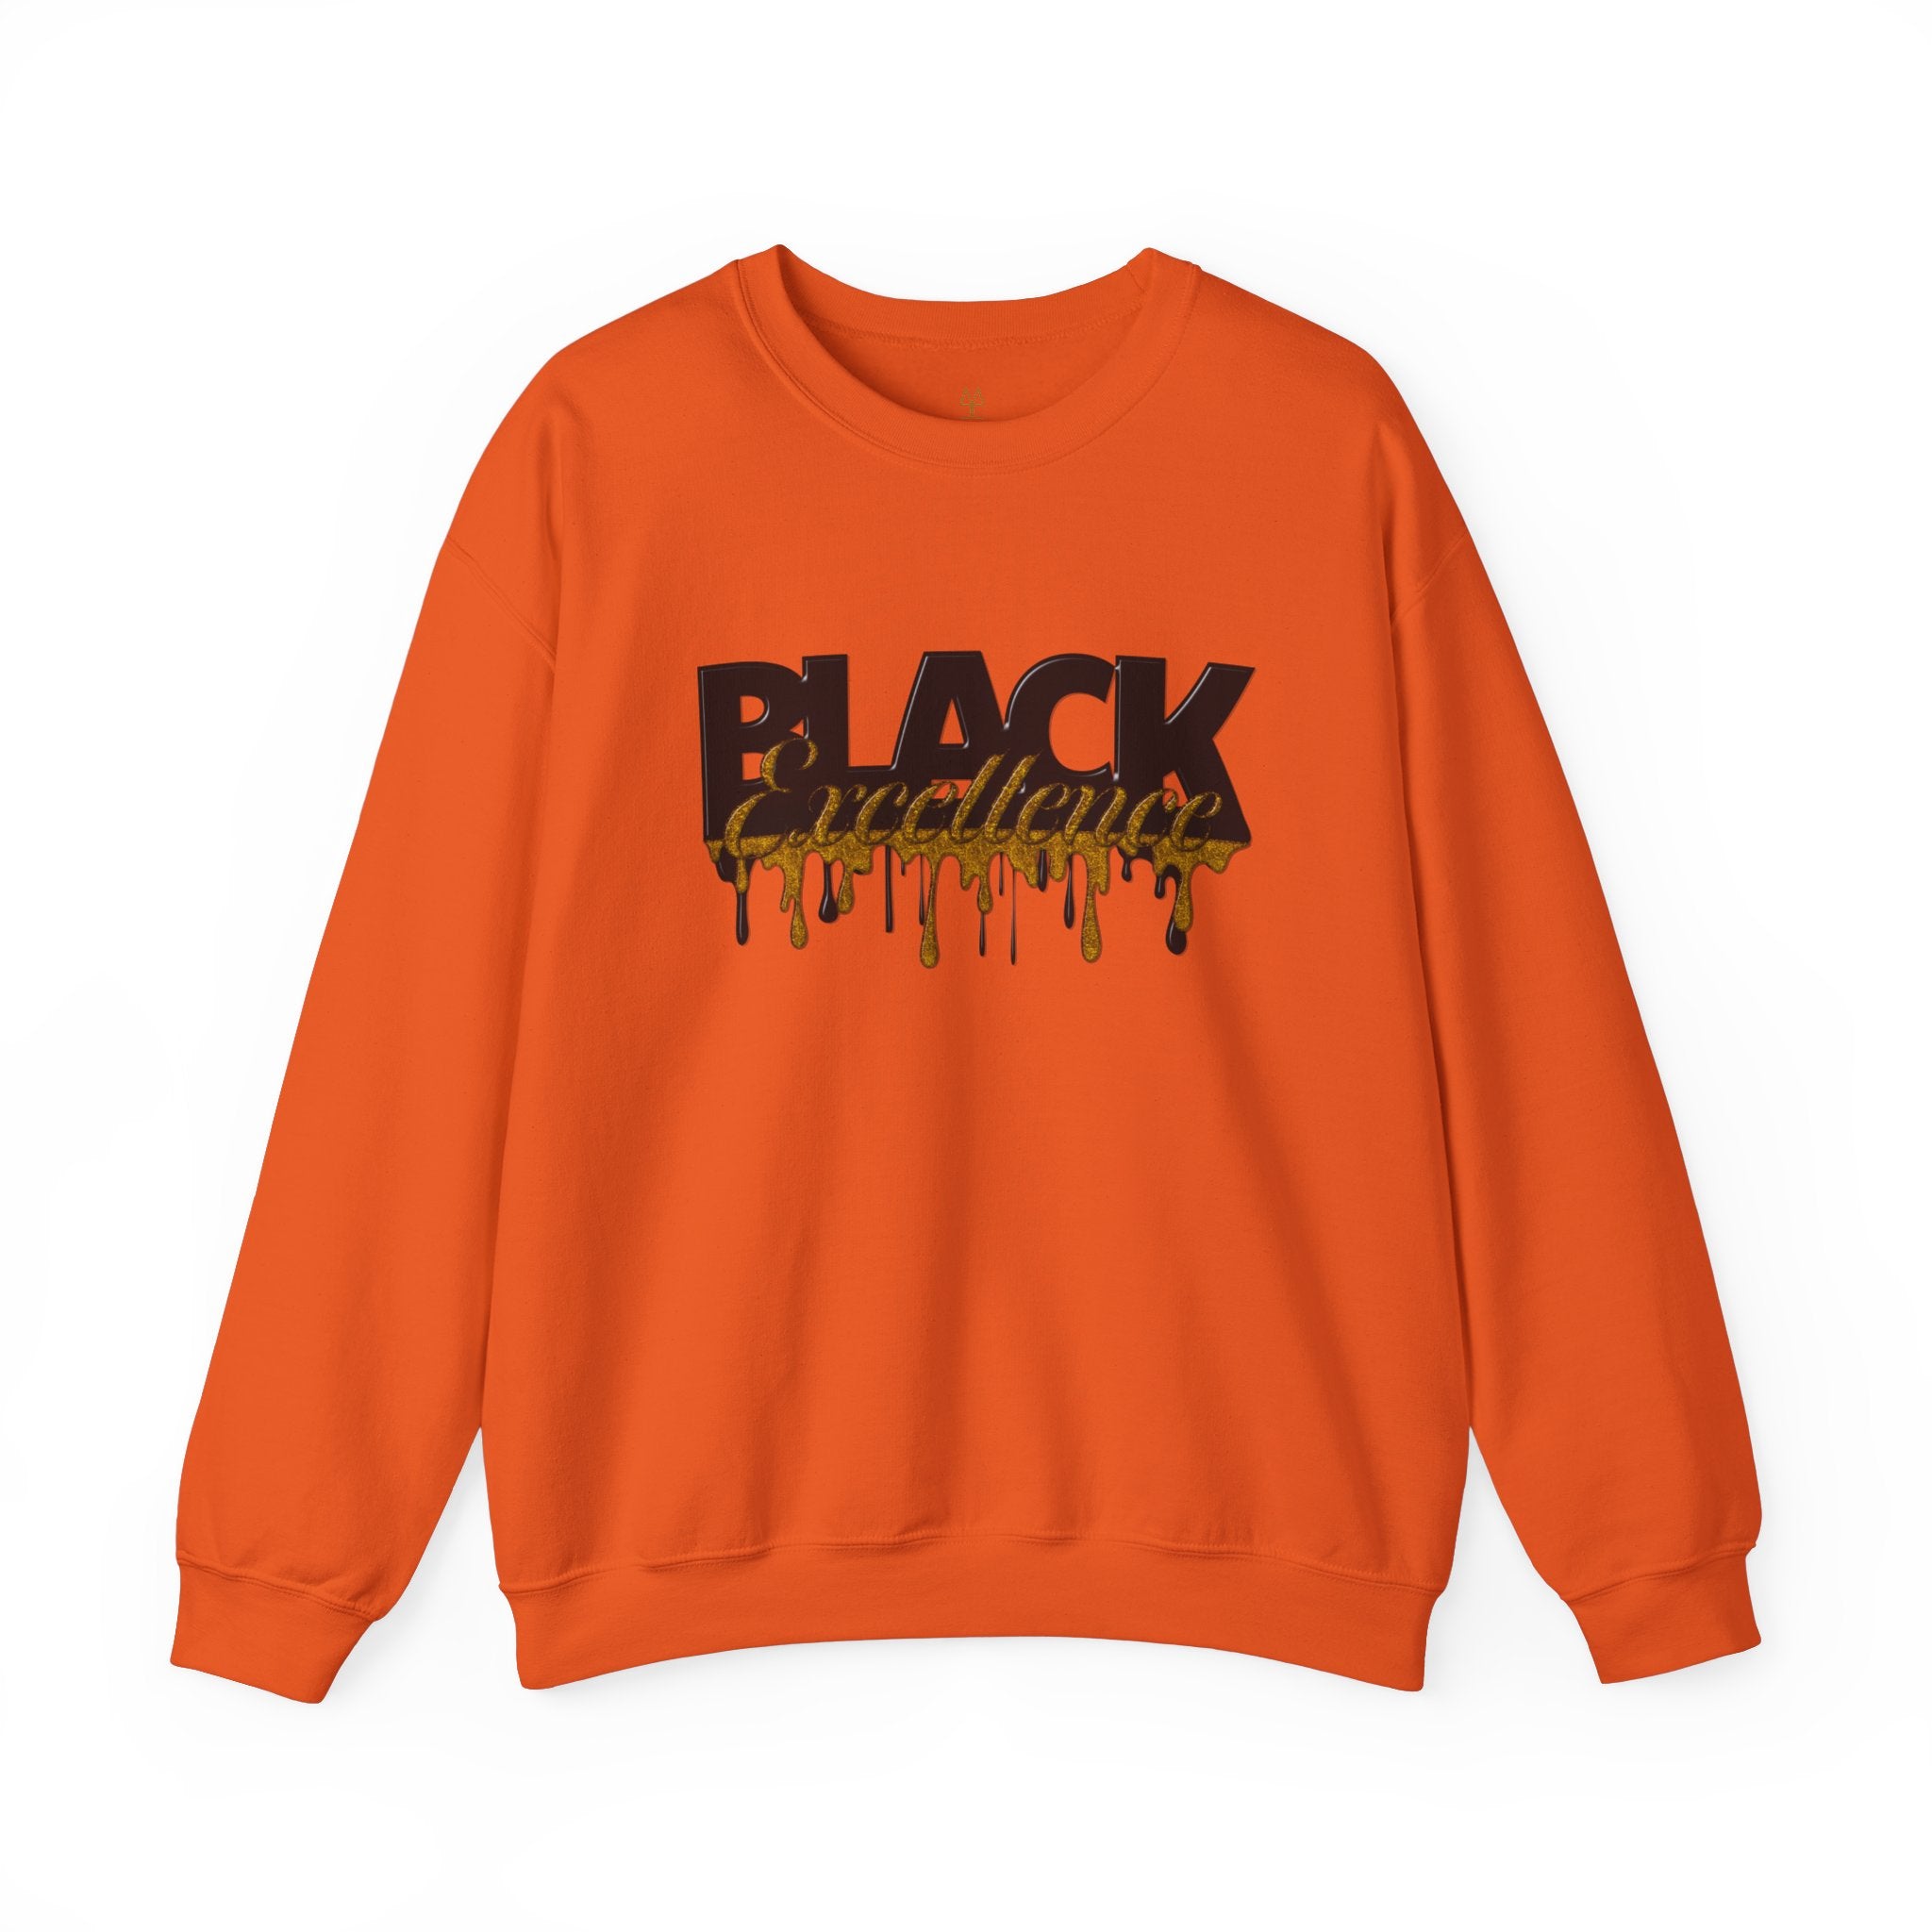 Black Excellence long sleeve sweatshirt in orange.